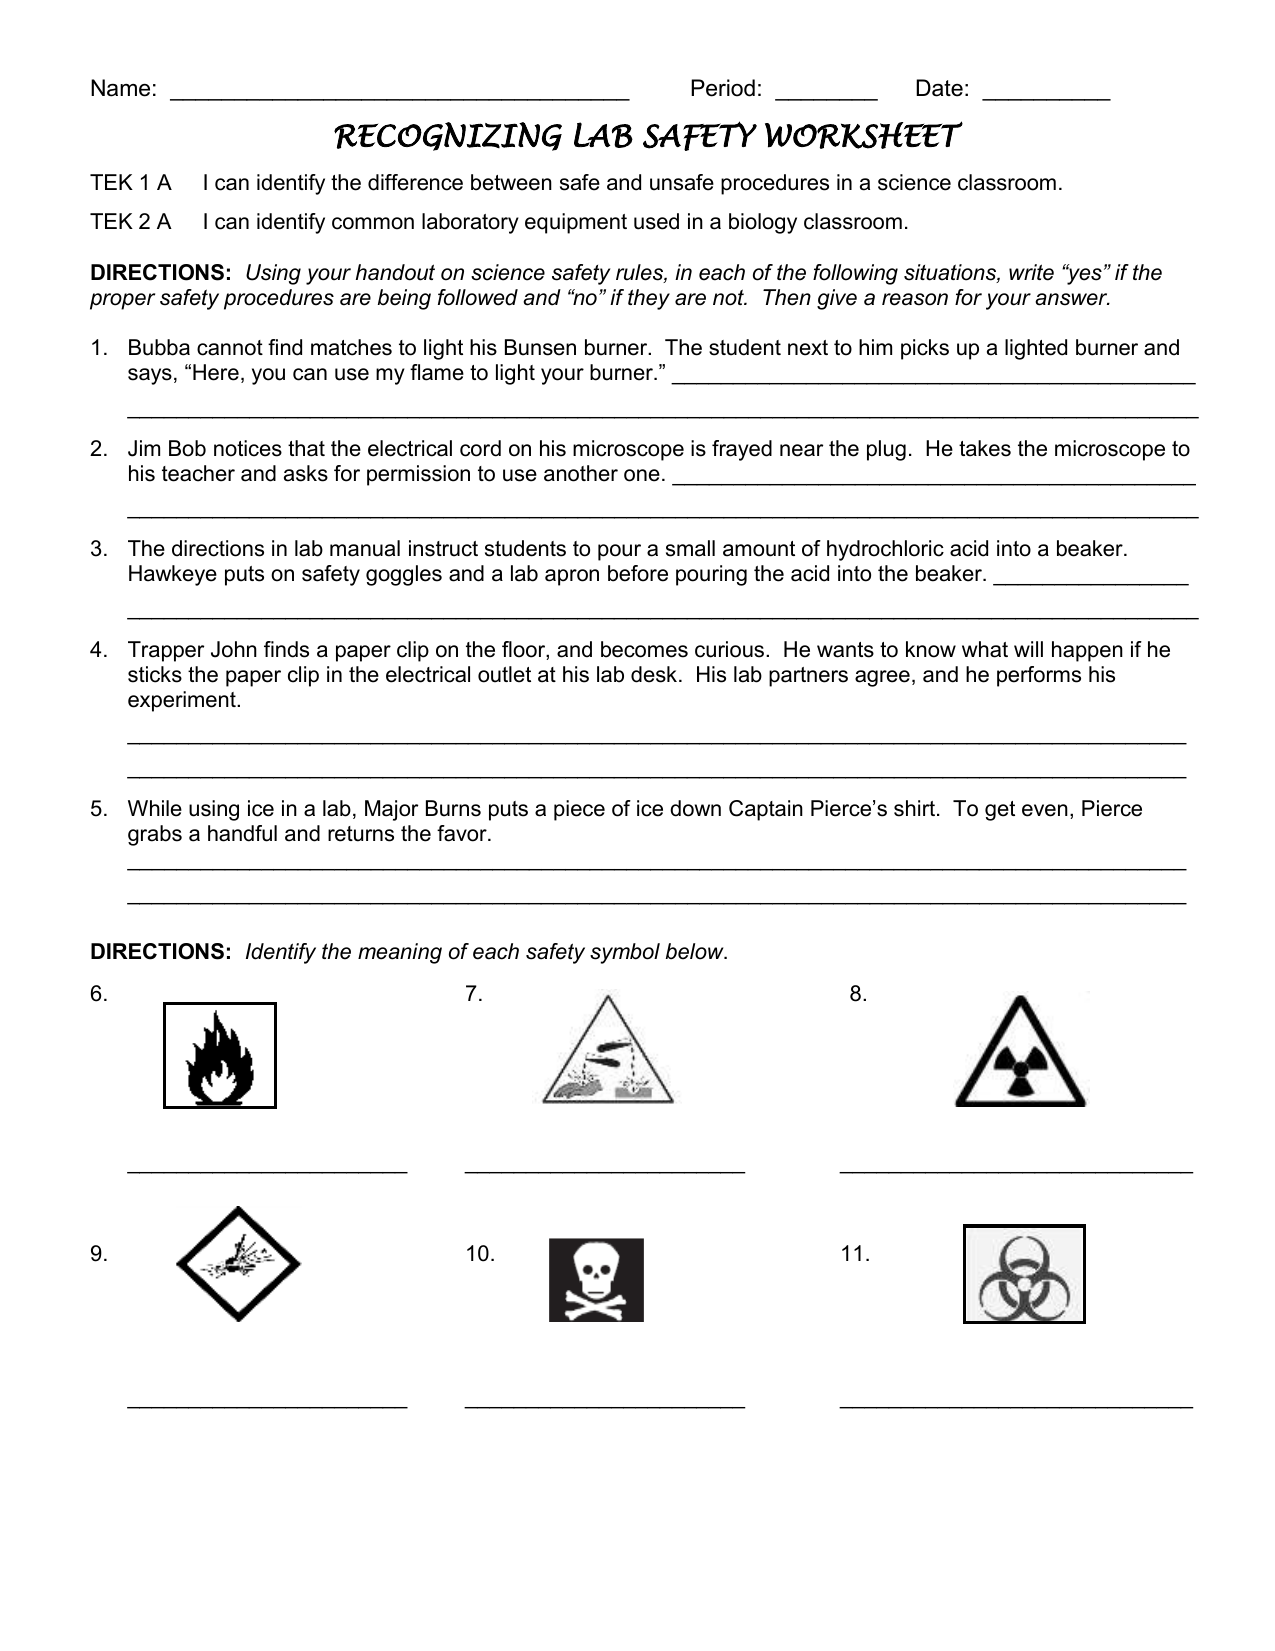 Lab Safety Worksheet 25 For Lab Safety Worksheet Answers